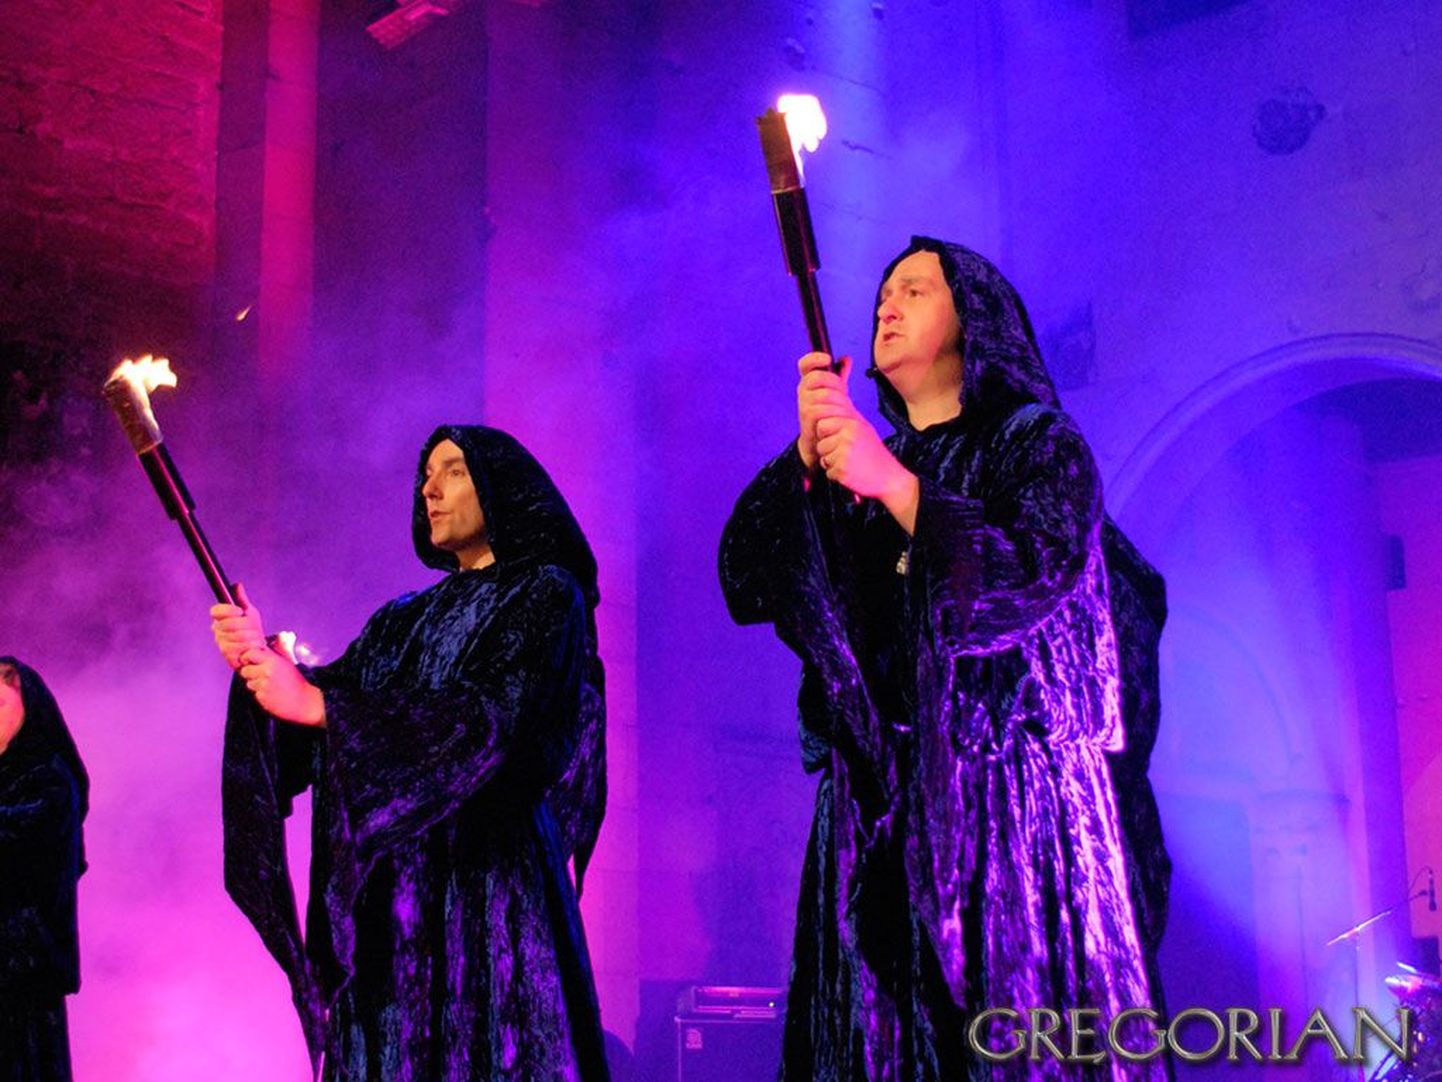 Gregoriani kontserte on kümne aasta jooksul külastanud enam kui miljon inimest.